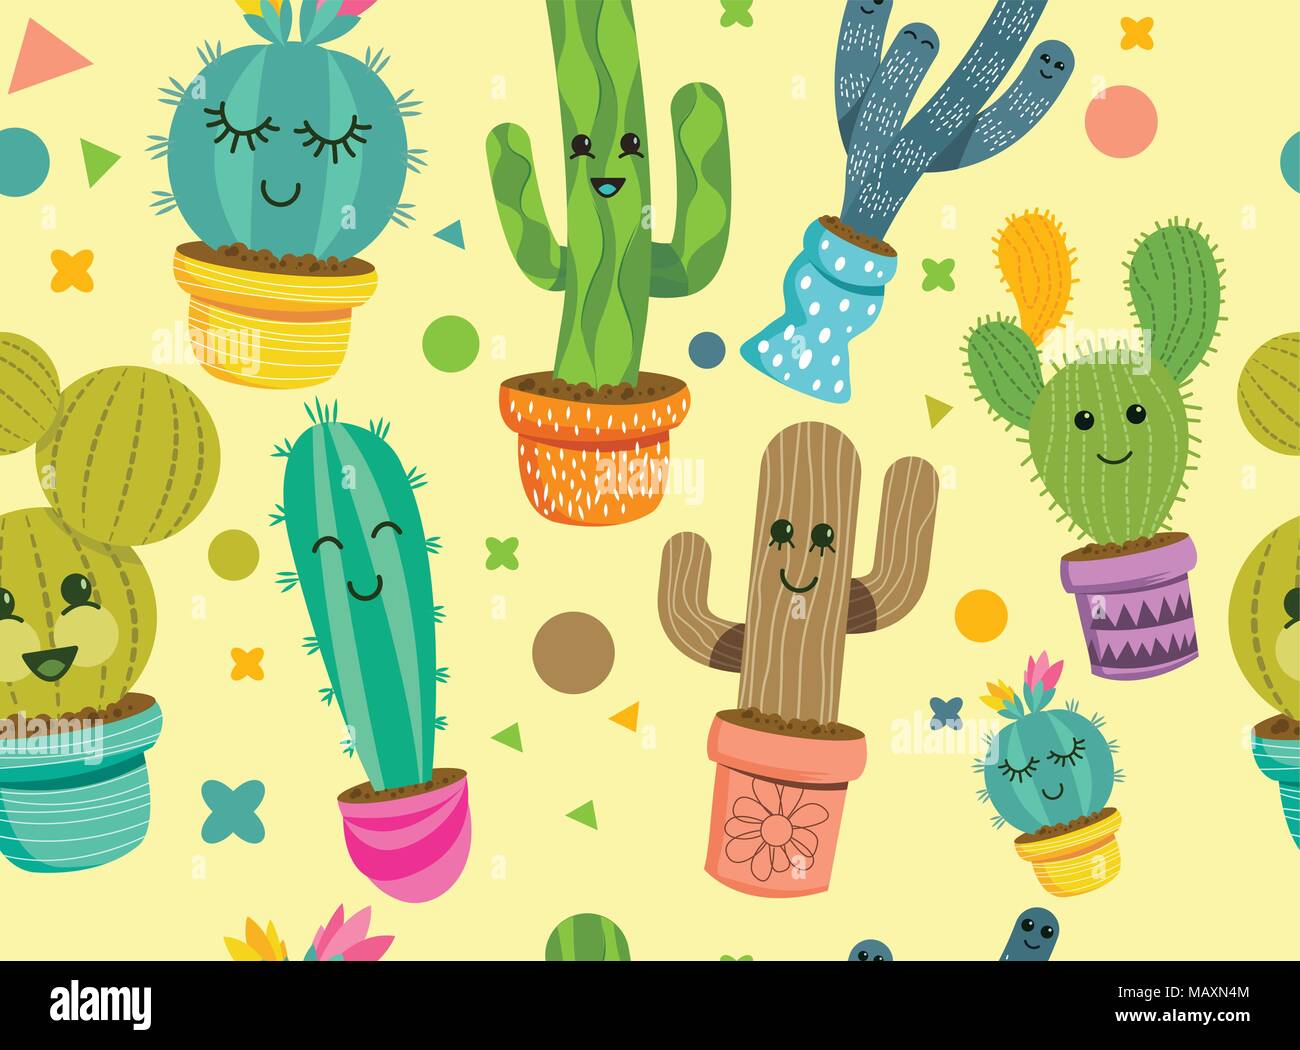 Un modèle uniforme de cactus joyeux personnages avec des visages souriants dans des pots colorés. Vector illustration. Illustration de Vecteur